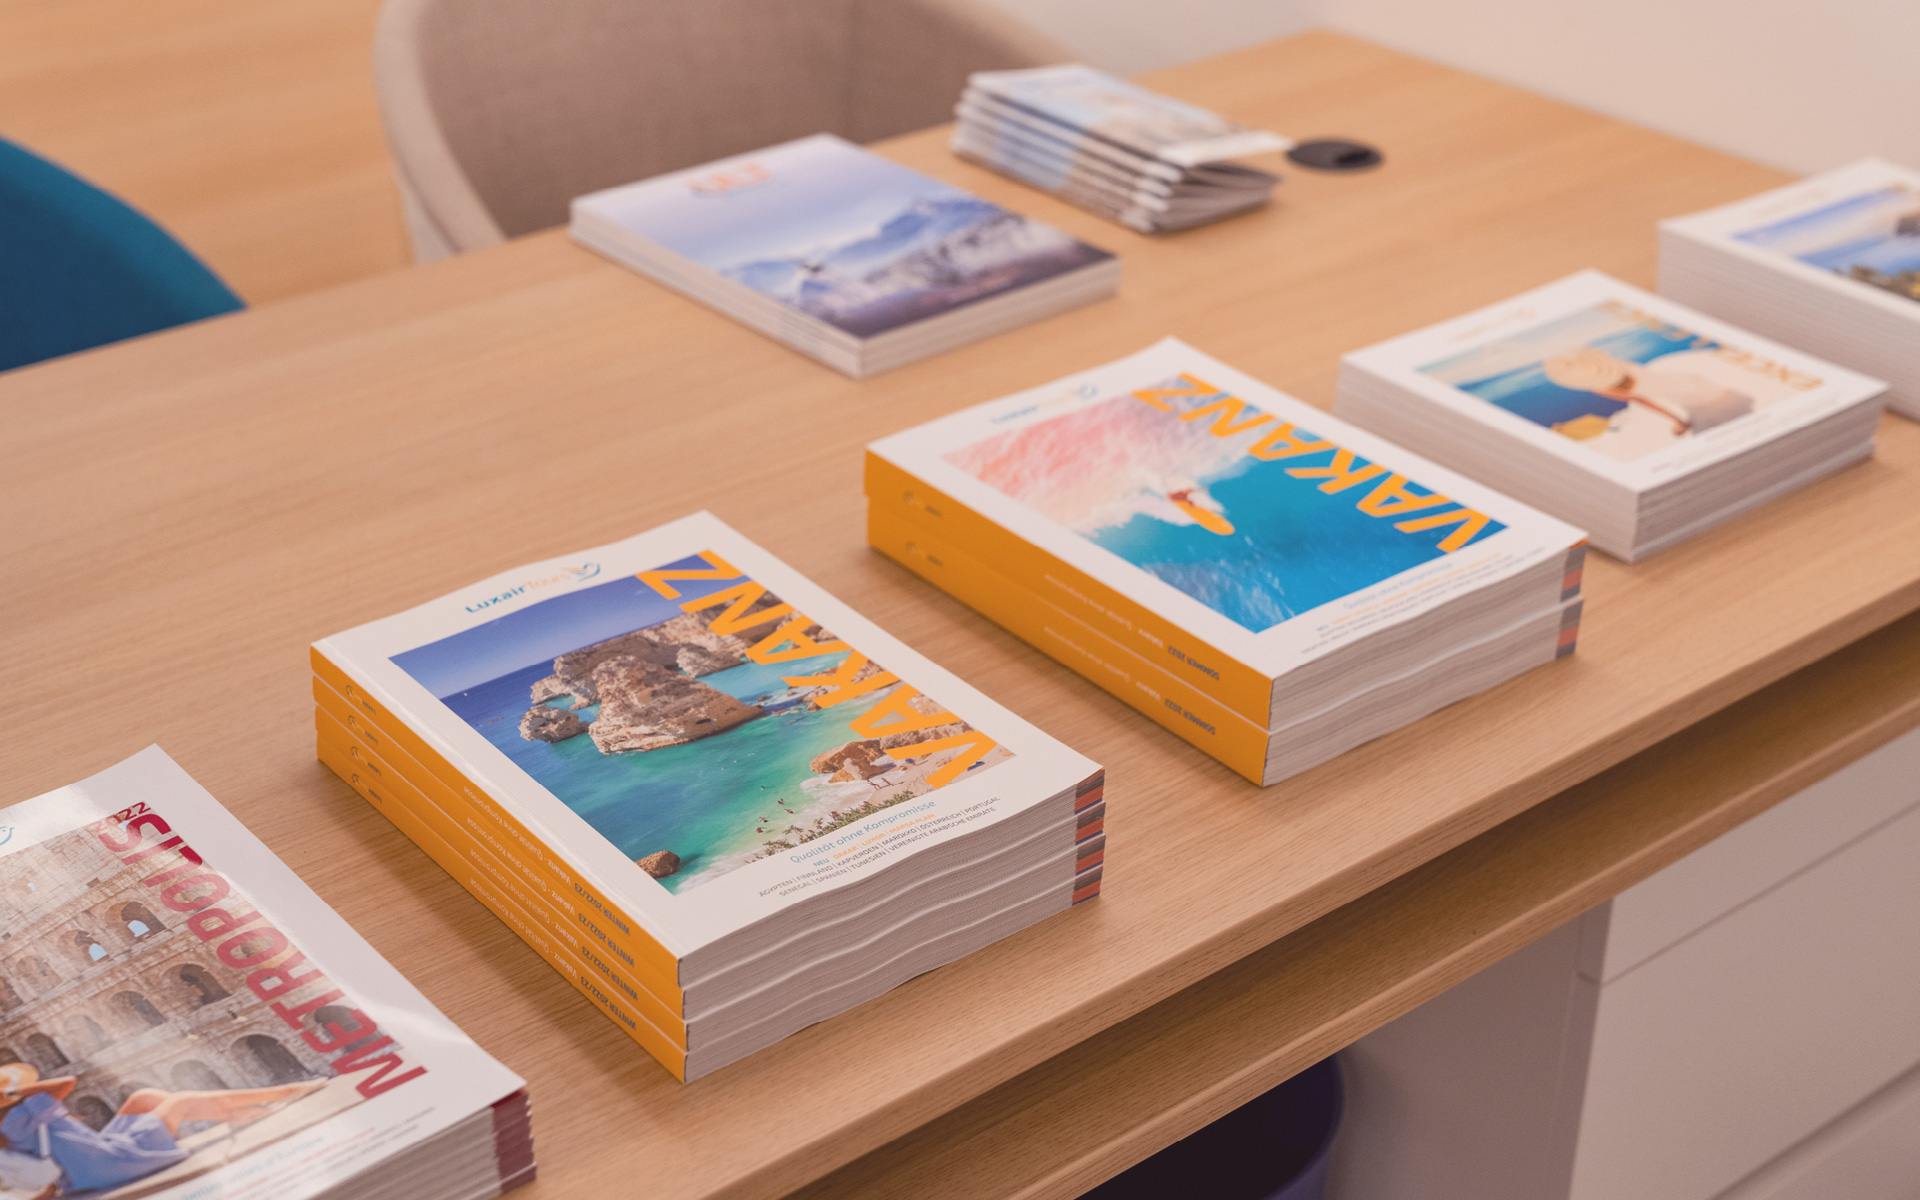 Des catalogues de voyage se trouvent sur la table